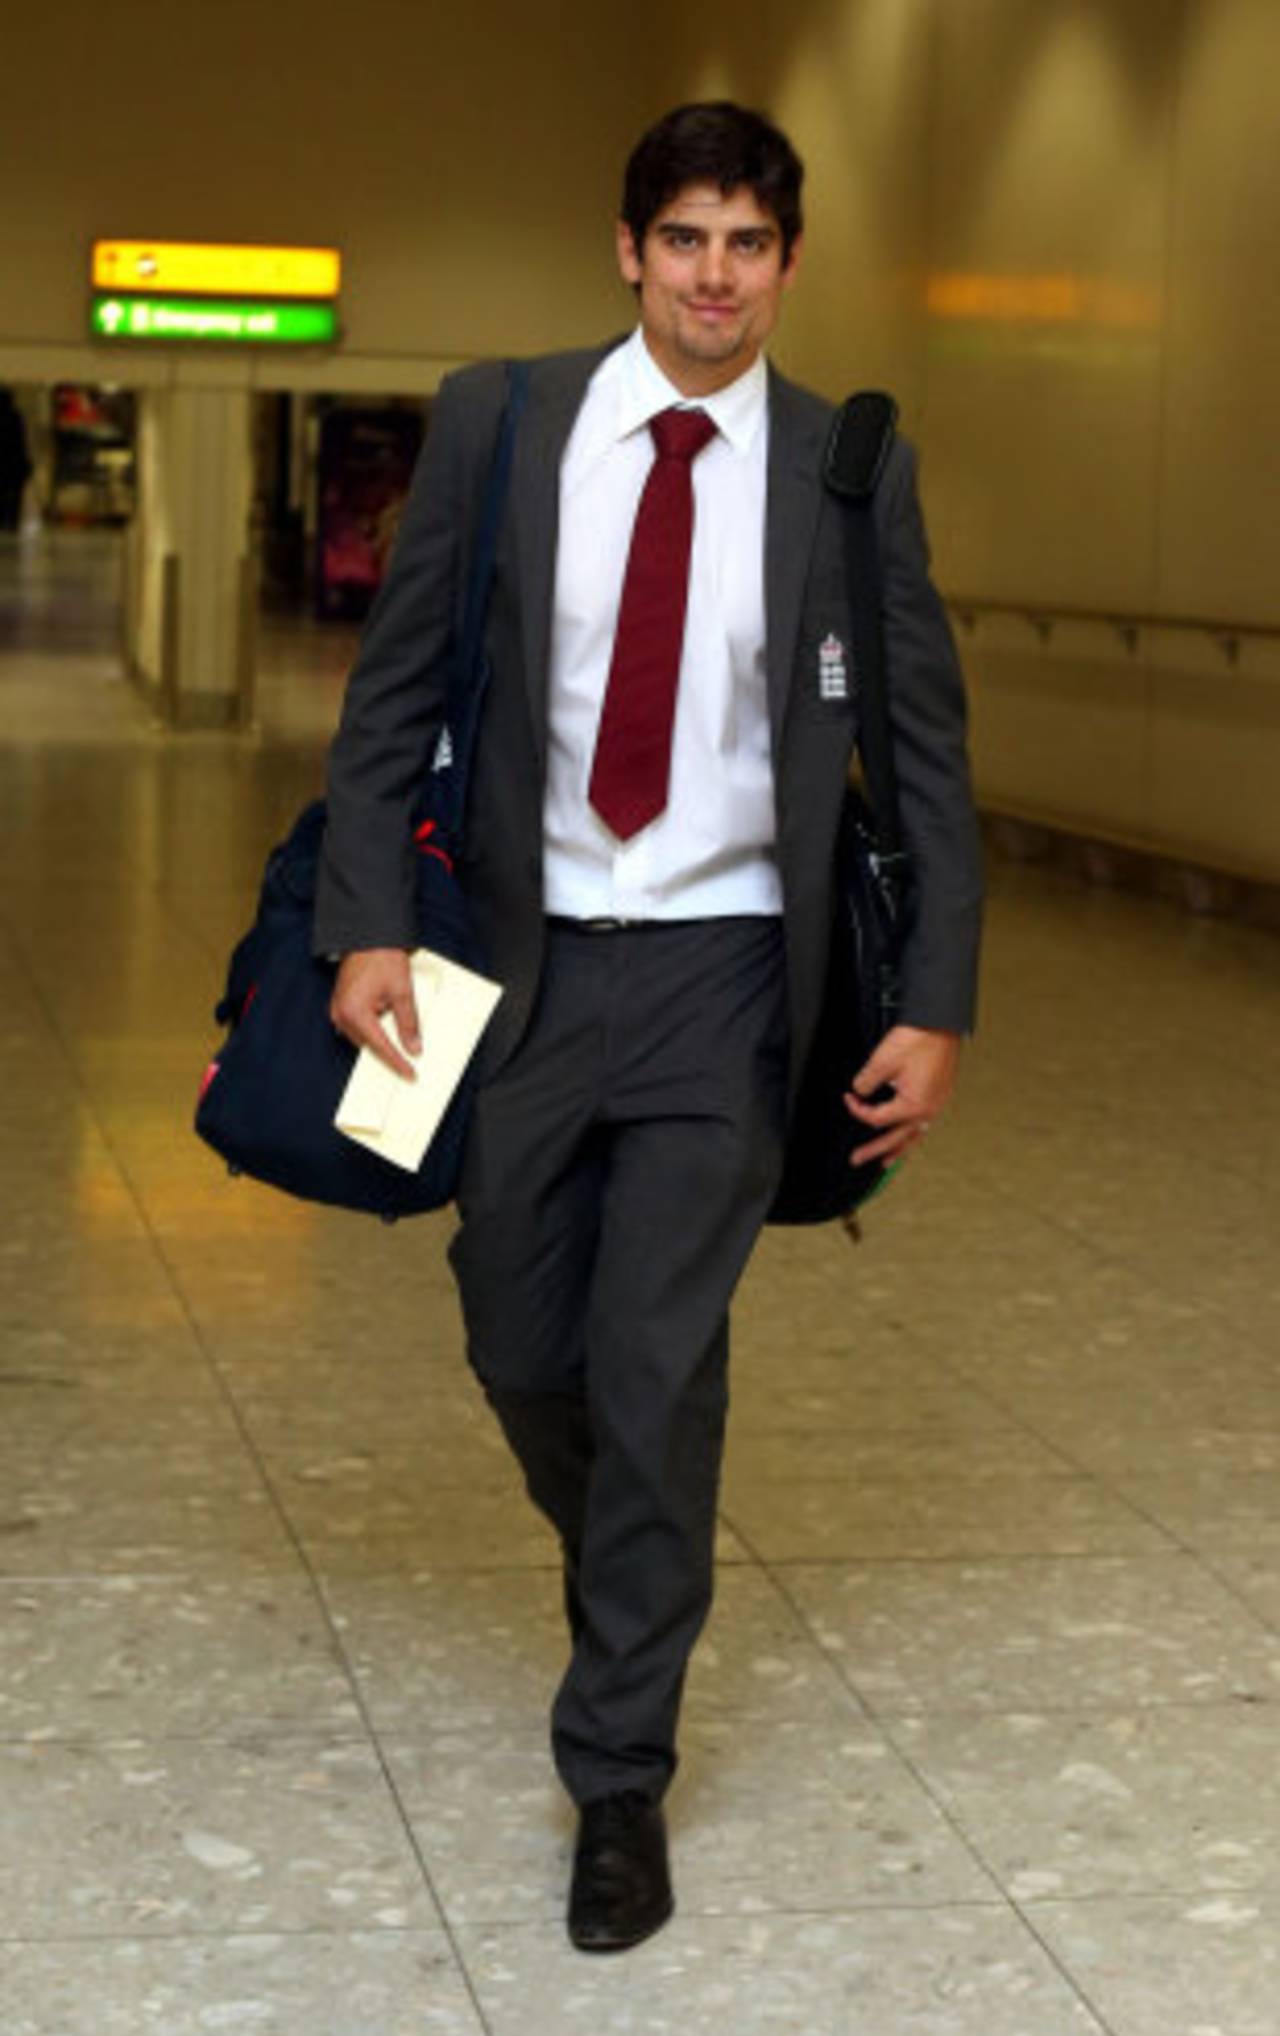 Alastair Cook walks through Heathrow as England departed for a Dubai training camp, London, October 25, 2012